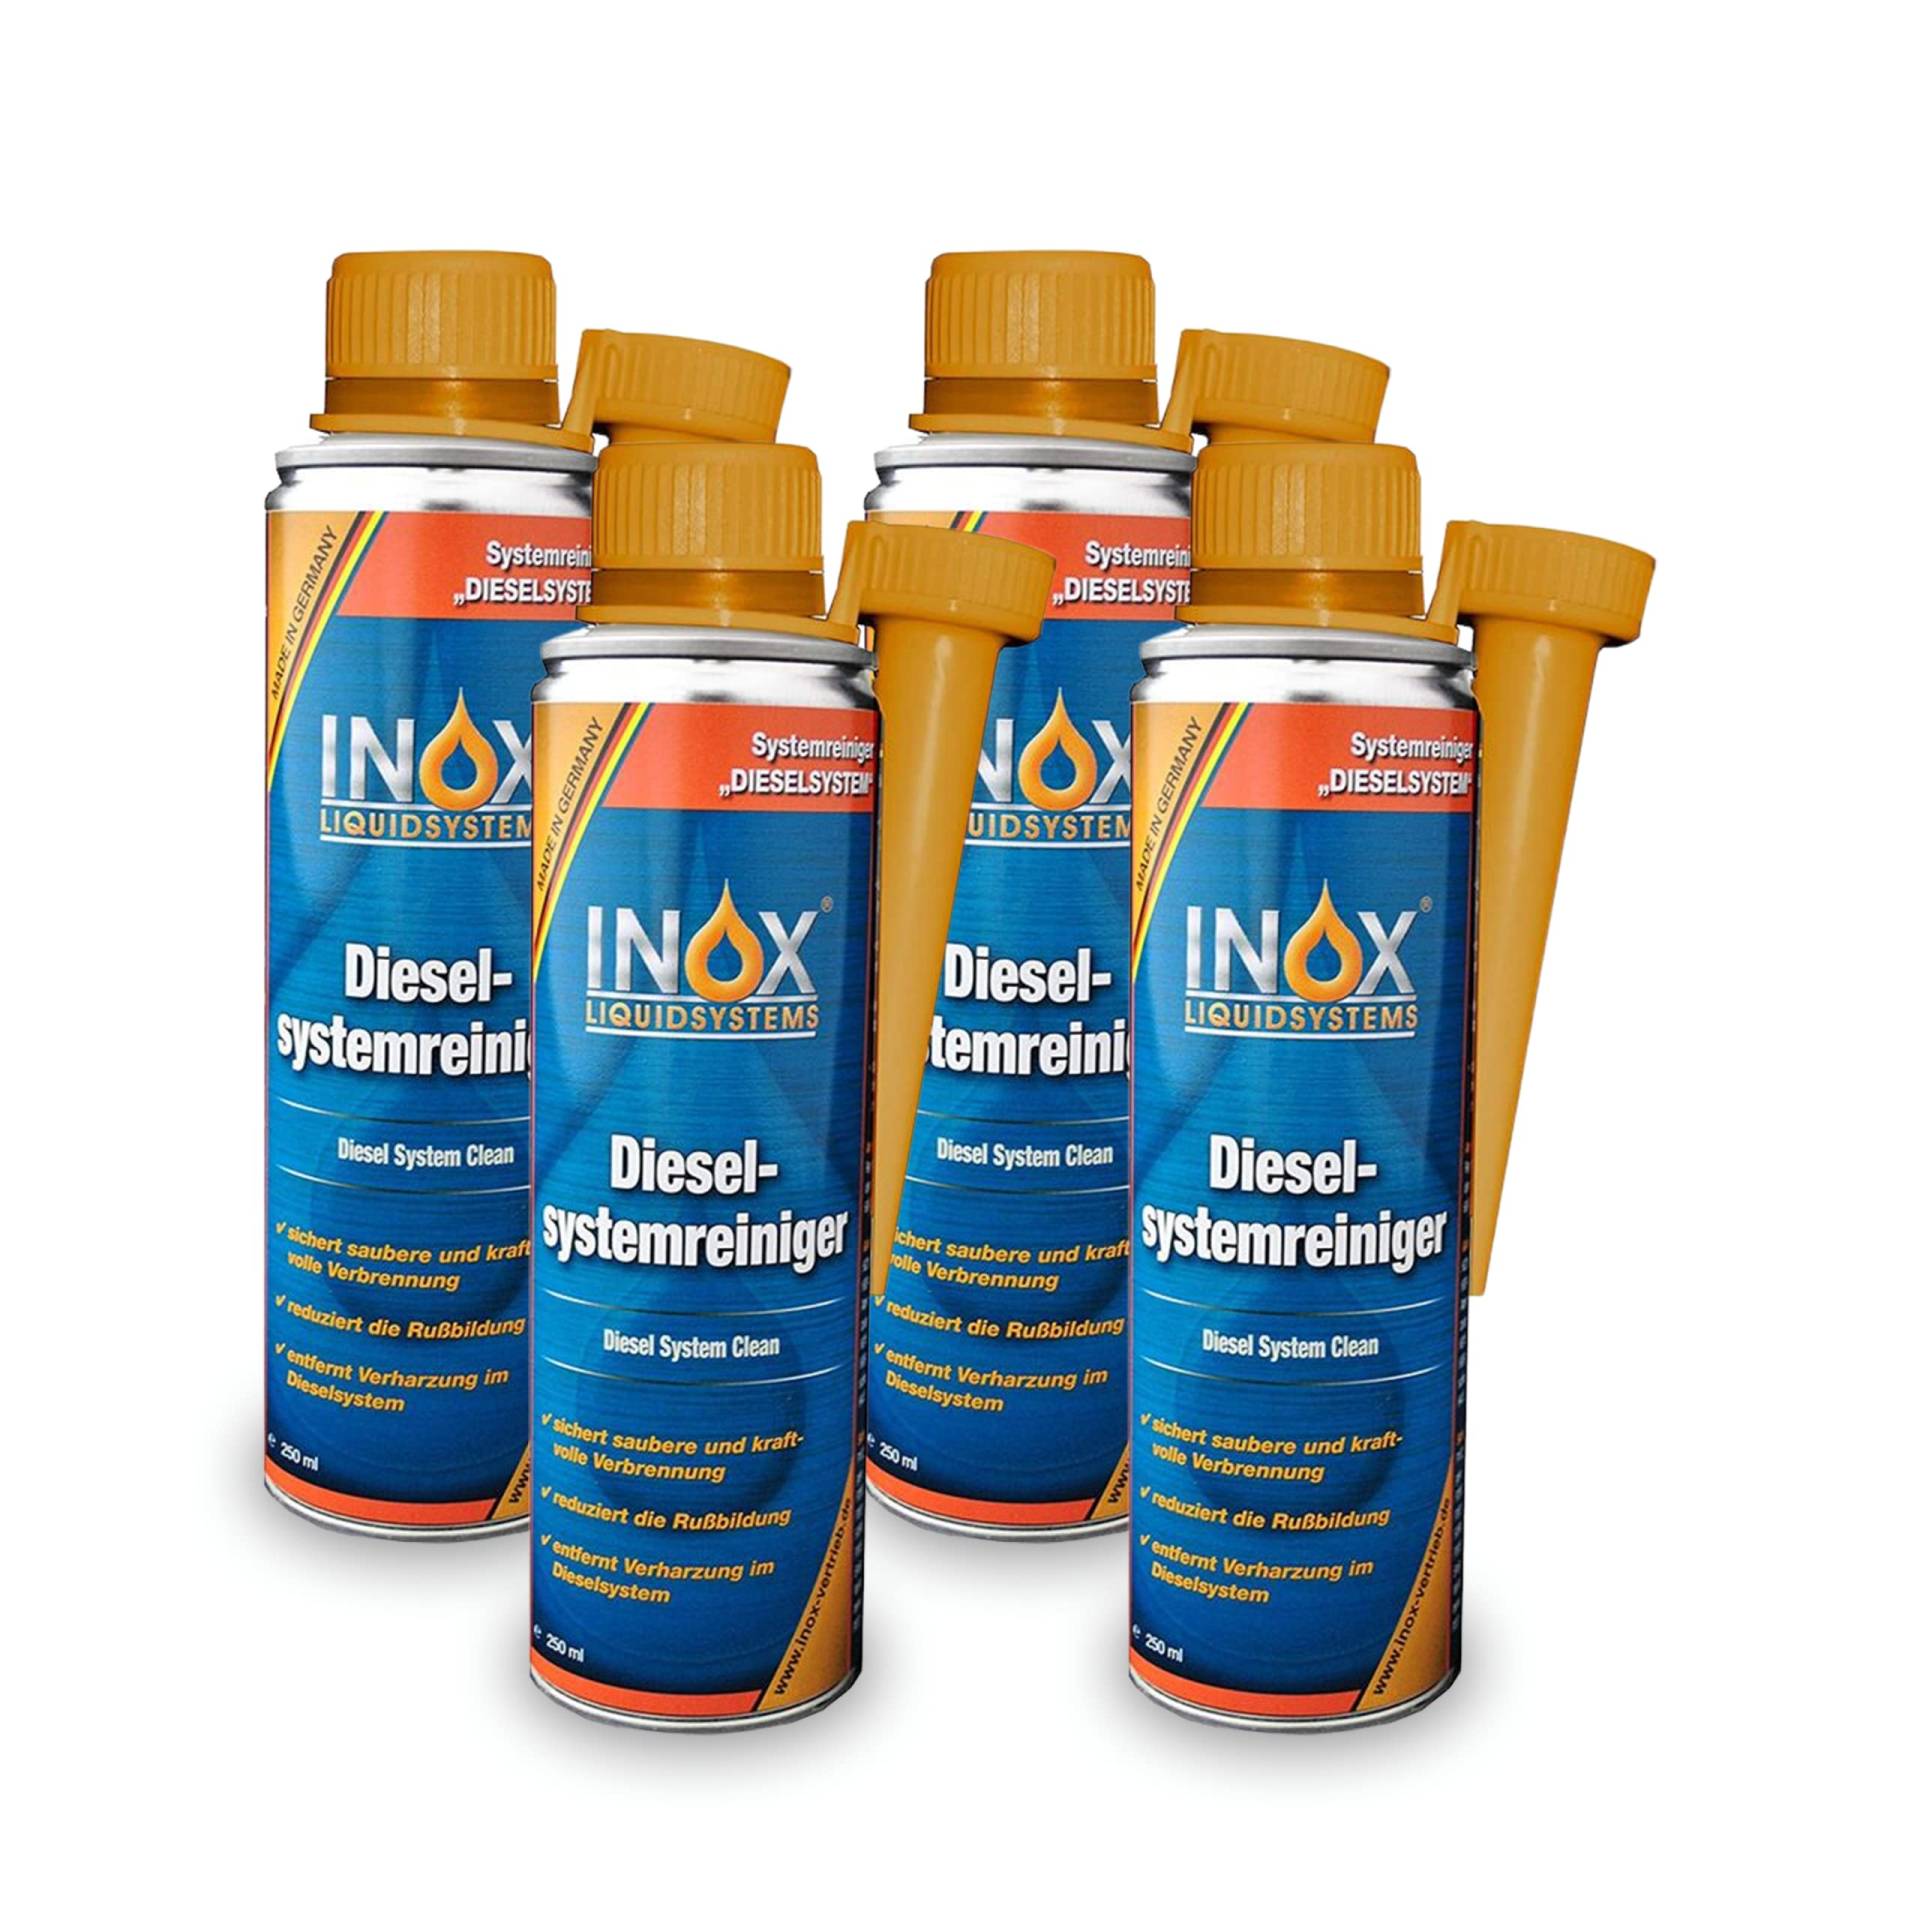 INOX® Diesel Systemreiniger Additiv, 4 x 250ml - Dieselzusatz für alle Dieselmotoren löst Verschmutzung und Verharzung im Dieselsystem von INOX-LIQUIDSYSTEMS